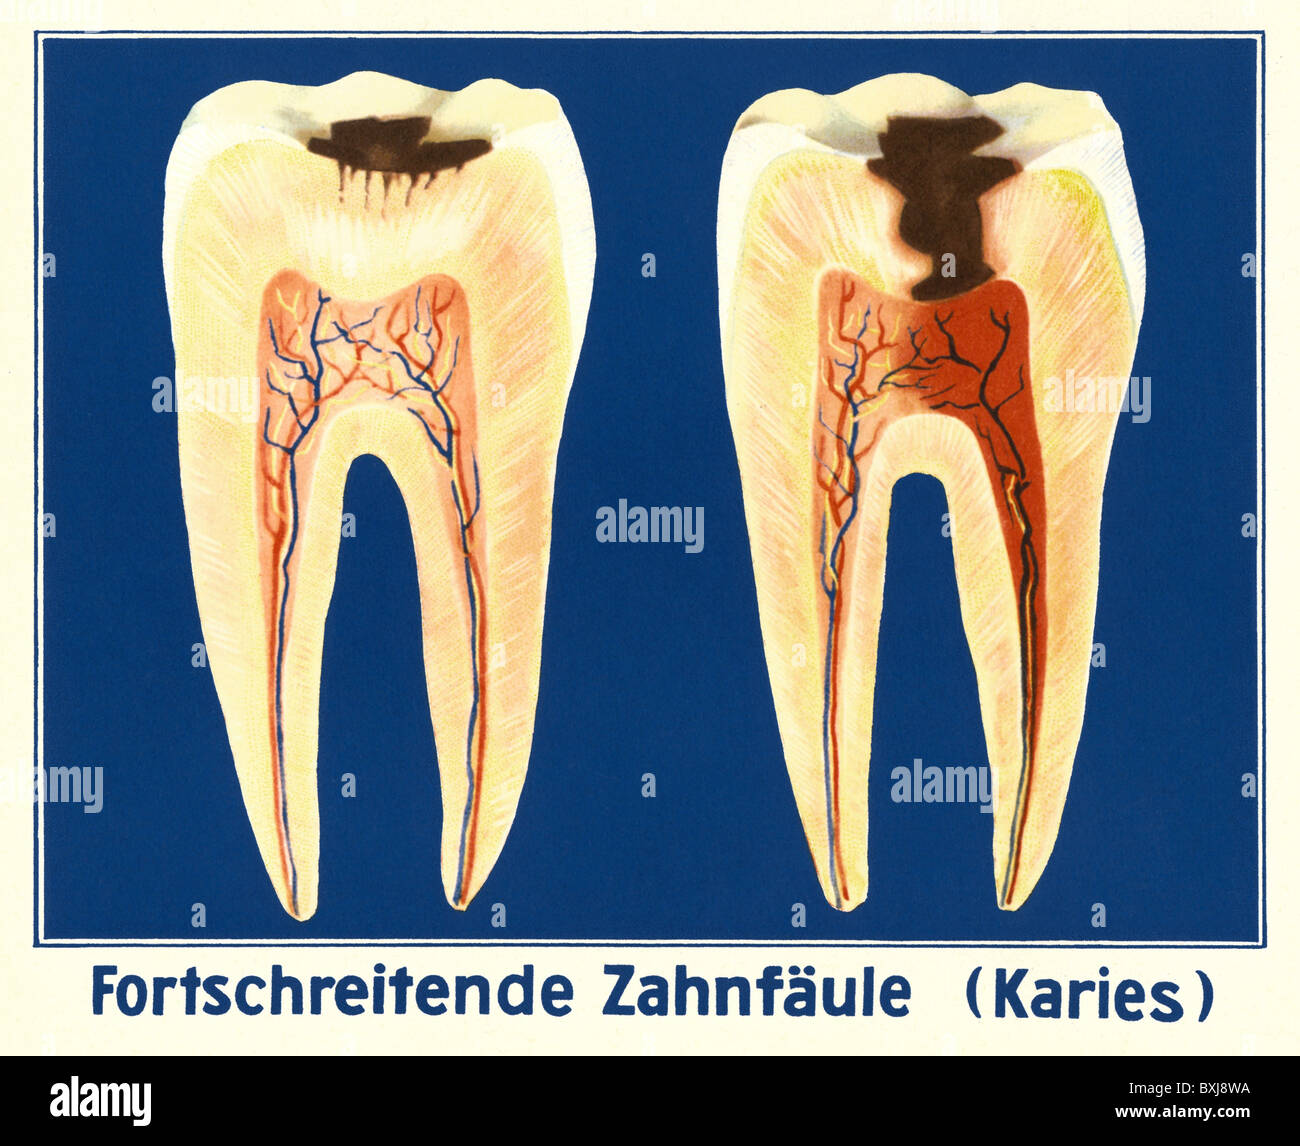 Médecine, dentisterie, carie dentaire, carte scolaire, Allemagne, vers 1935, droits additionnels-Clearences-non disponible Banque D'Images